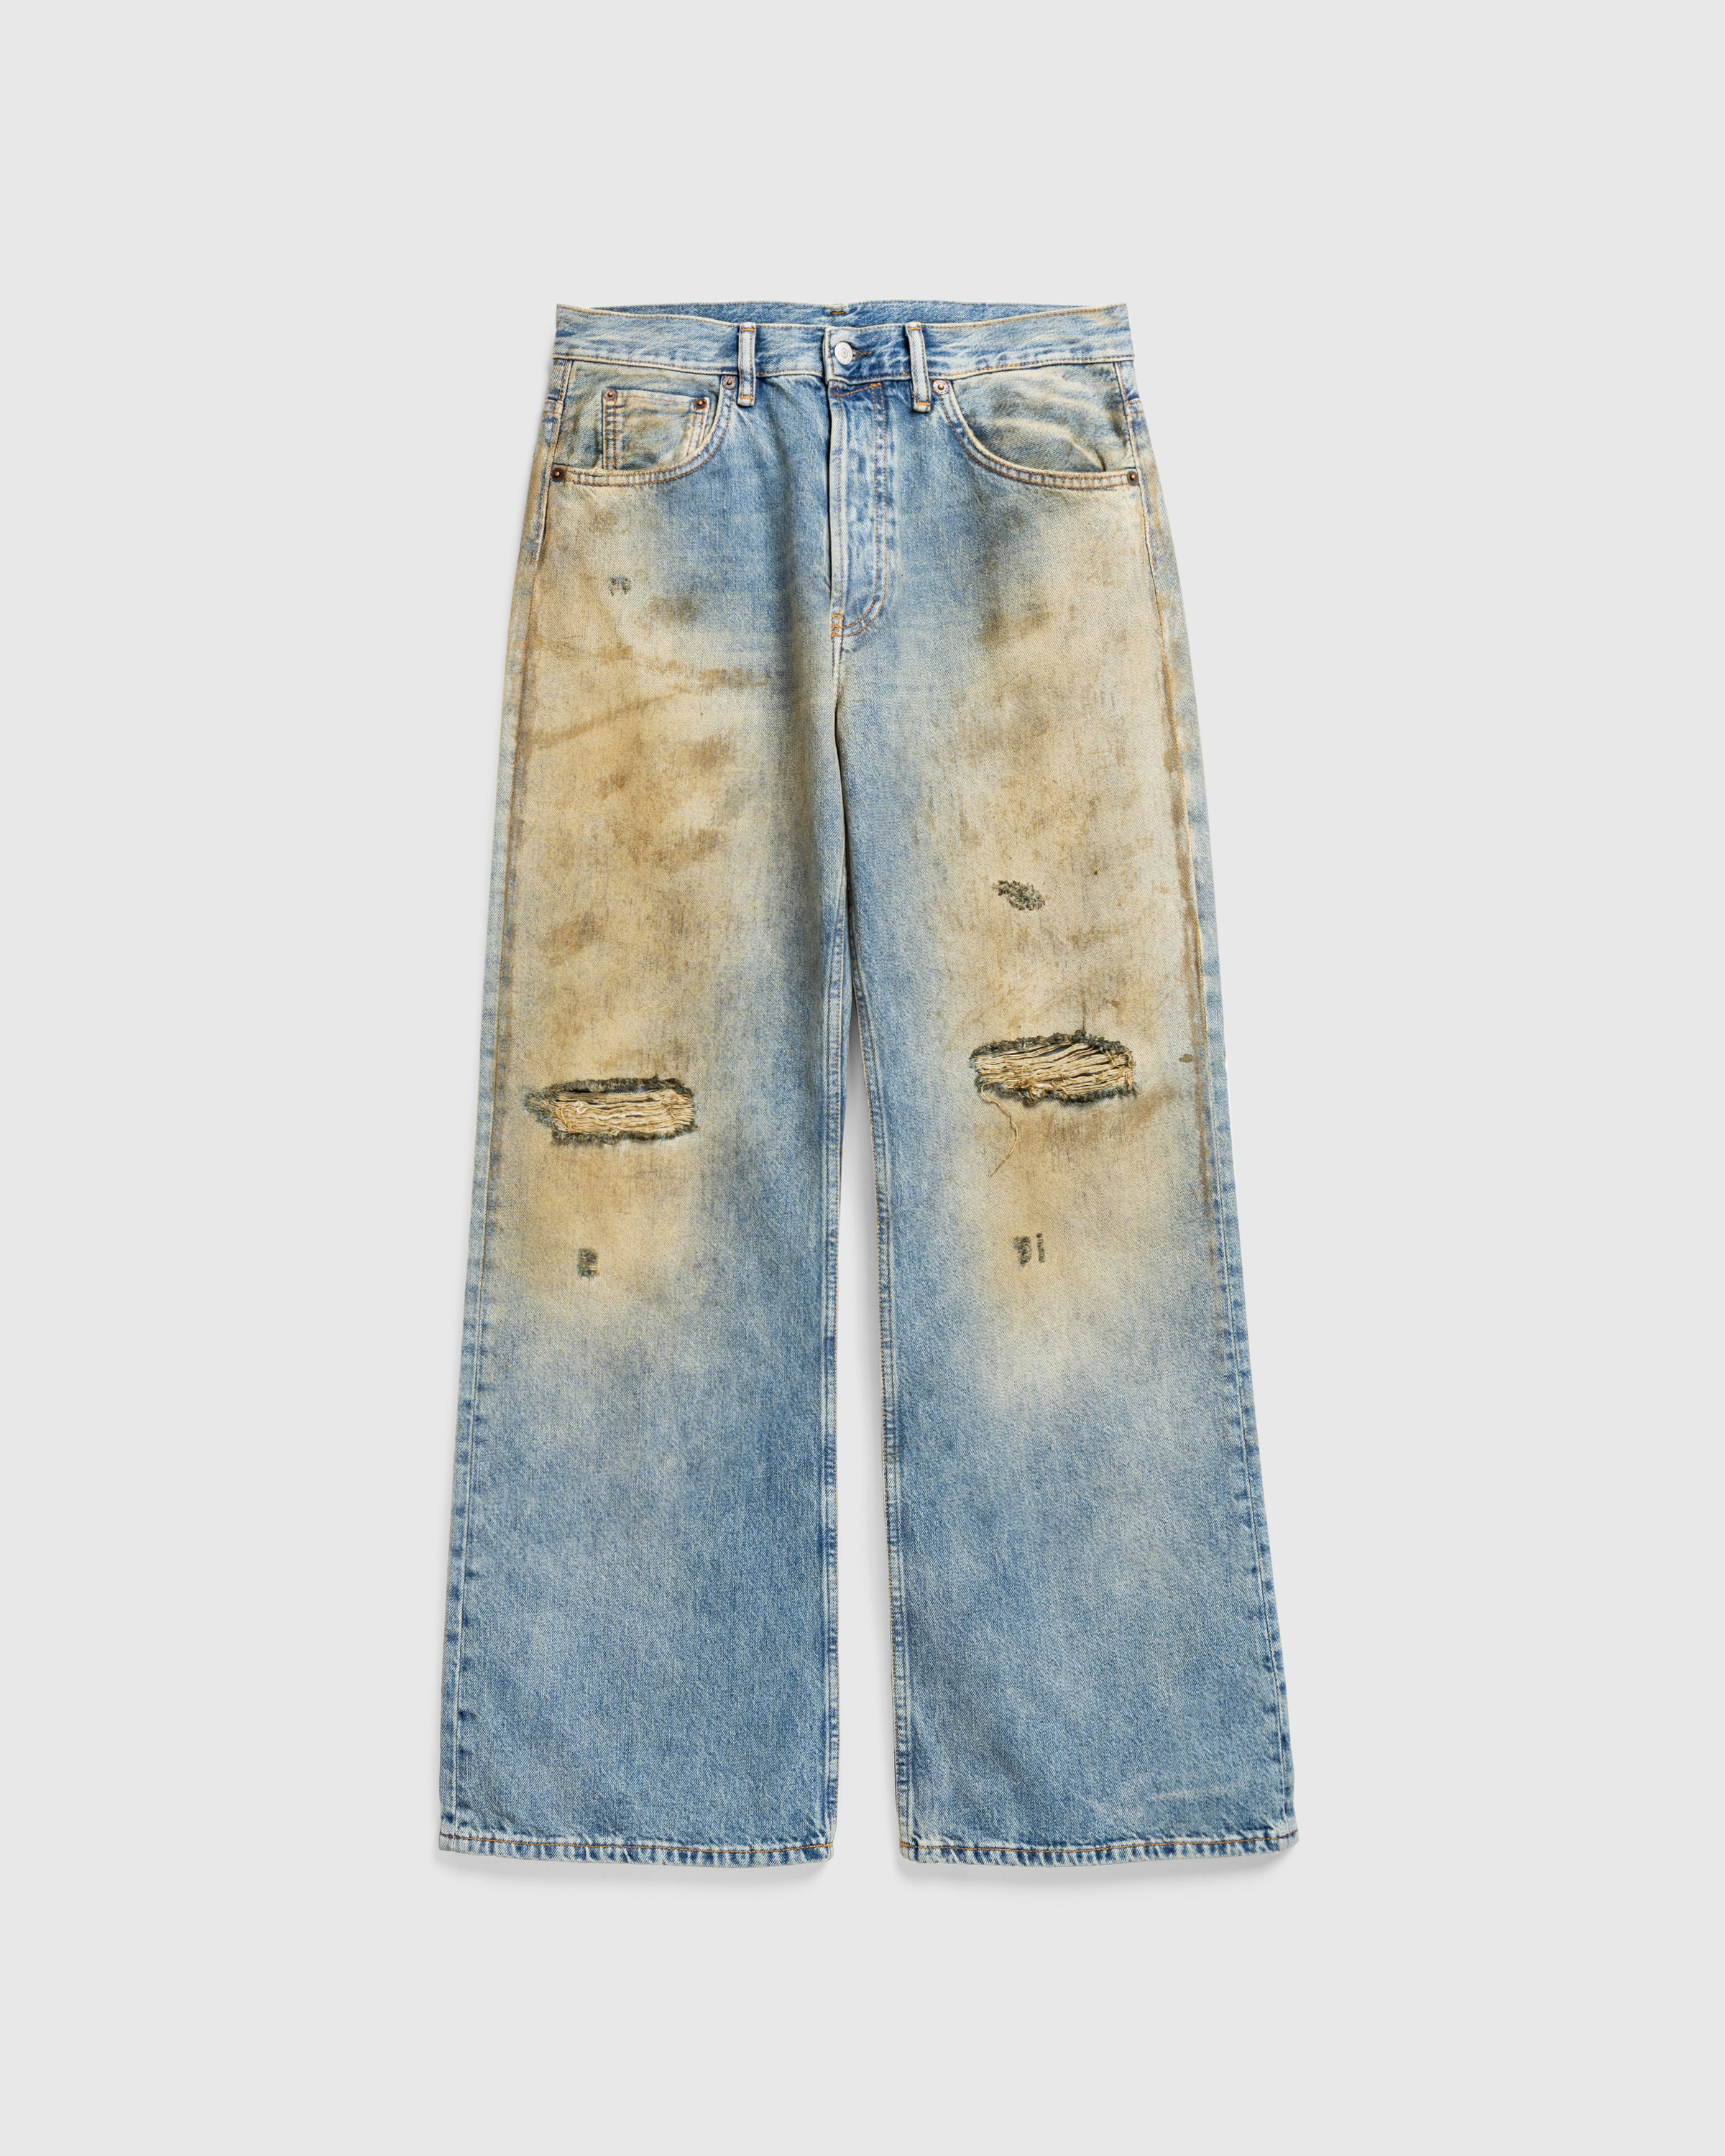 Acne Studios – Loose Fit Jeans 2021M Mid Blue - Denim - Blue - Image 1